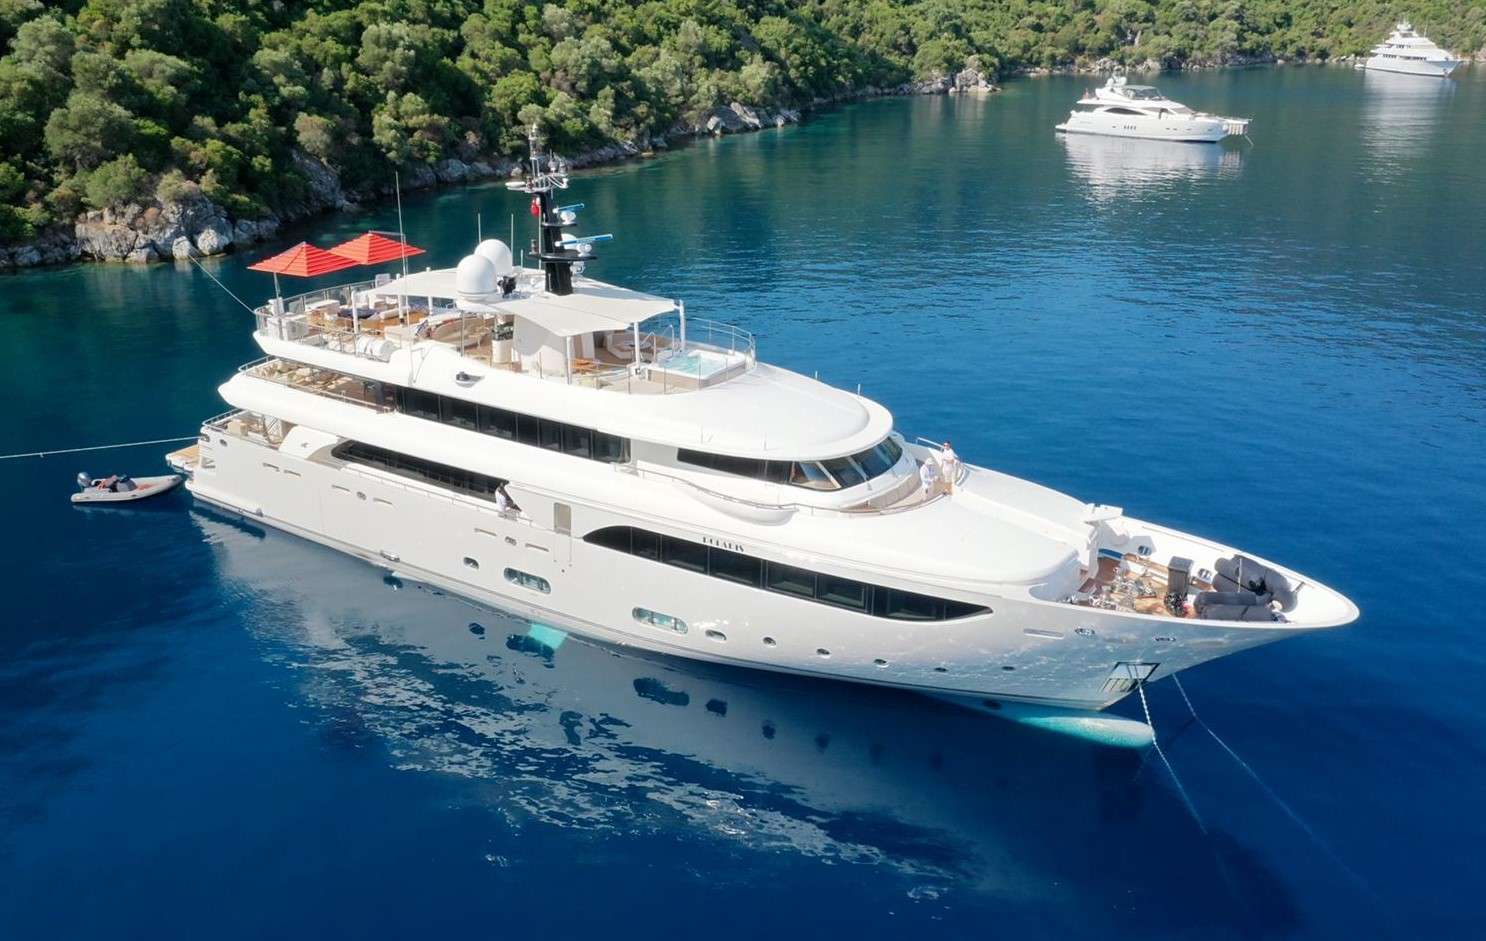 POLARIS - Yacht Charter Podstrana & Boat hire in Croatia, Greece, Turkey 1